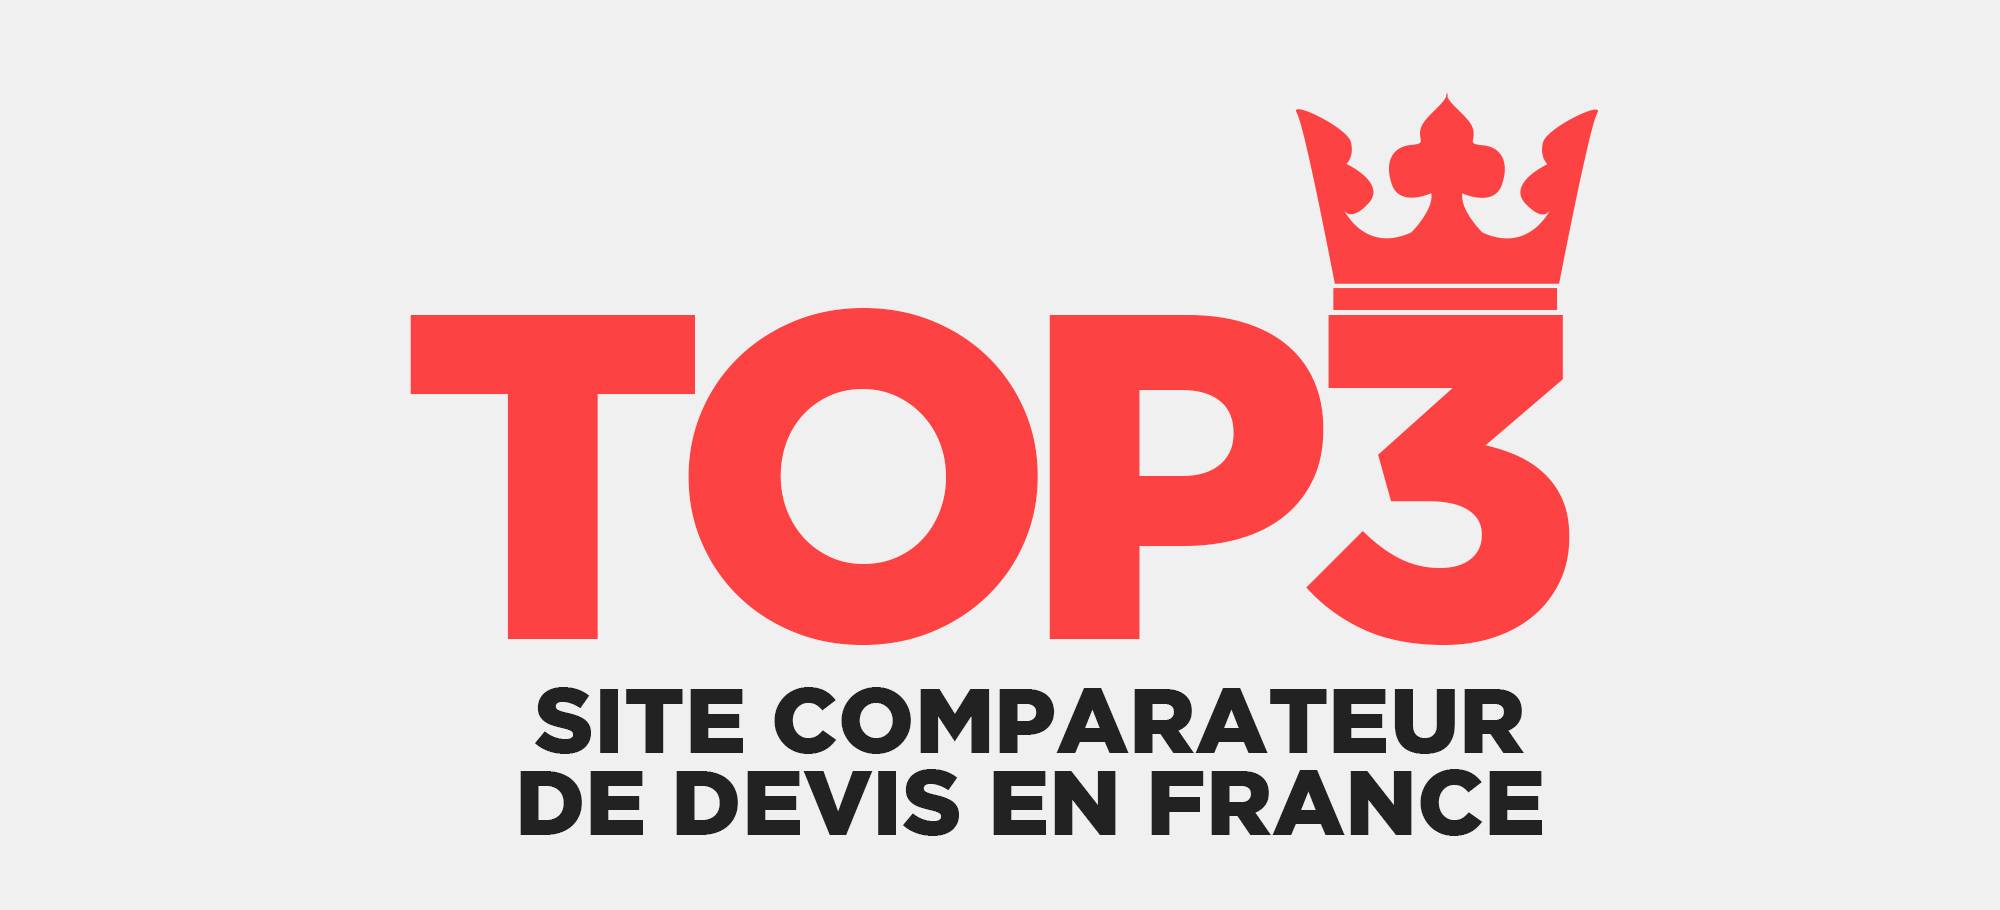 Lire la suite à propos de l’article Top 3 de site comparateur de devis en France